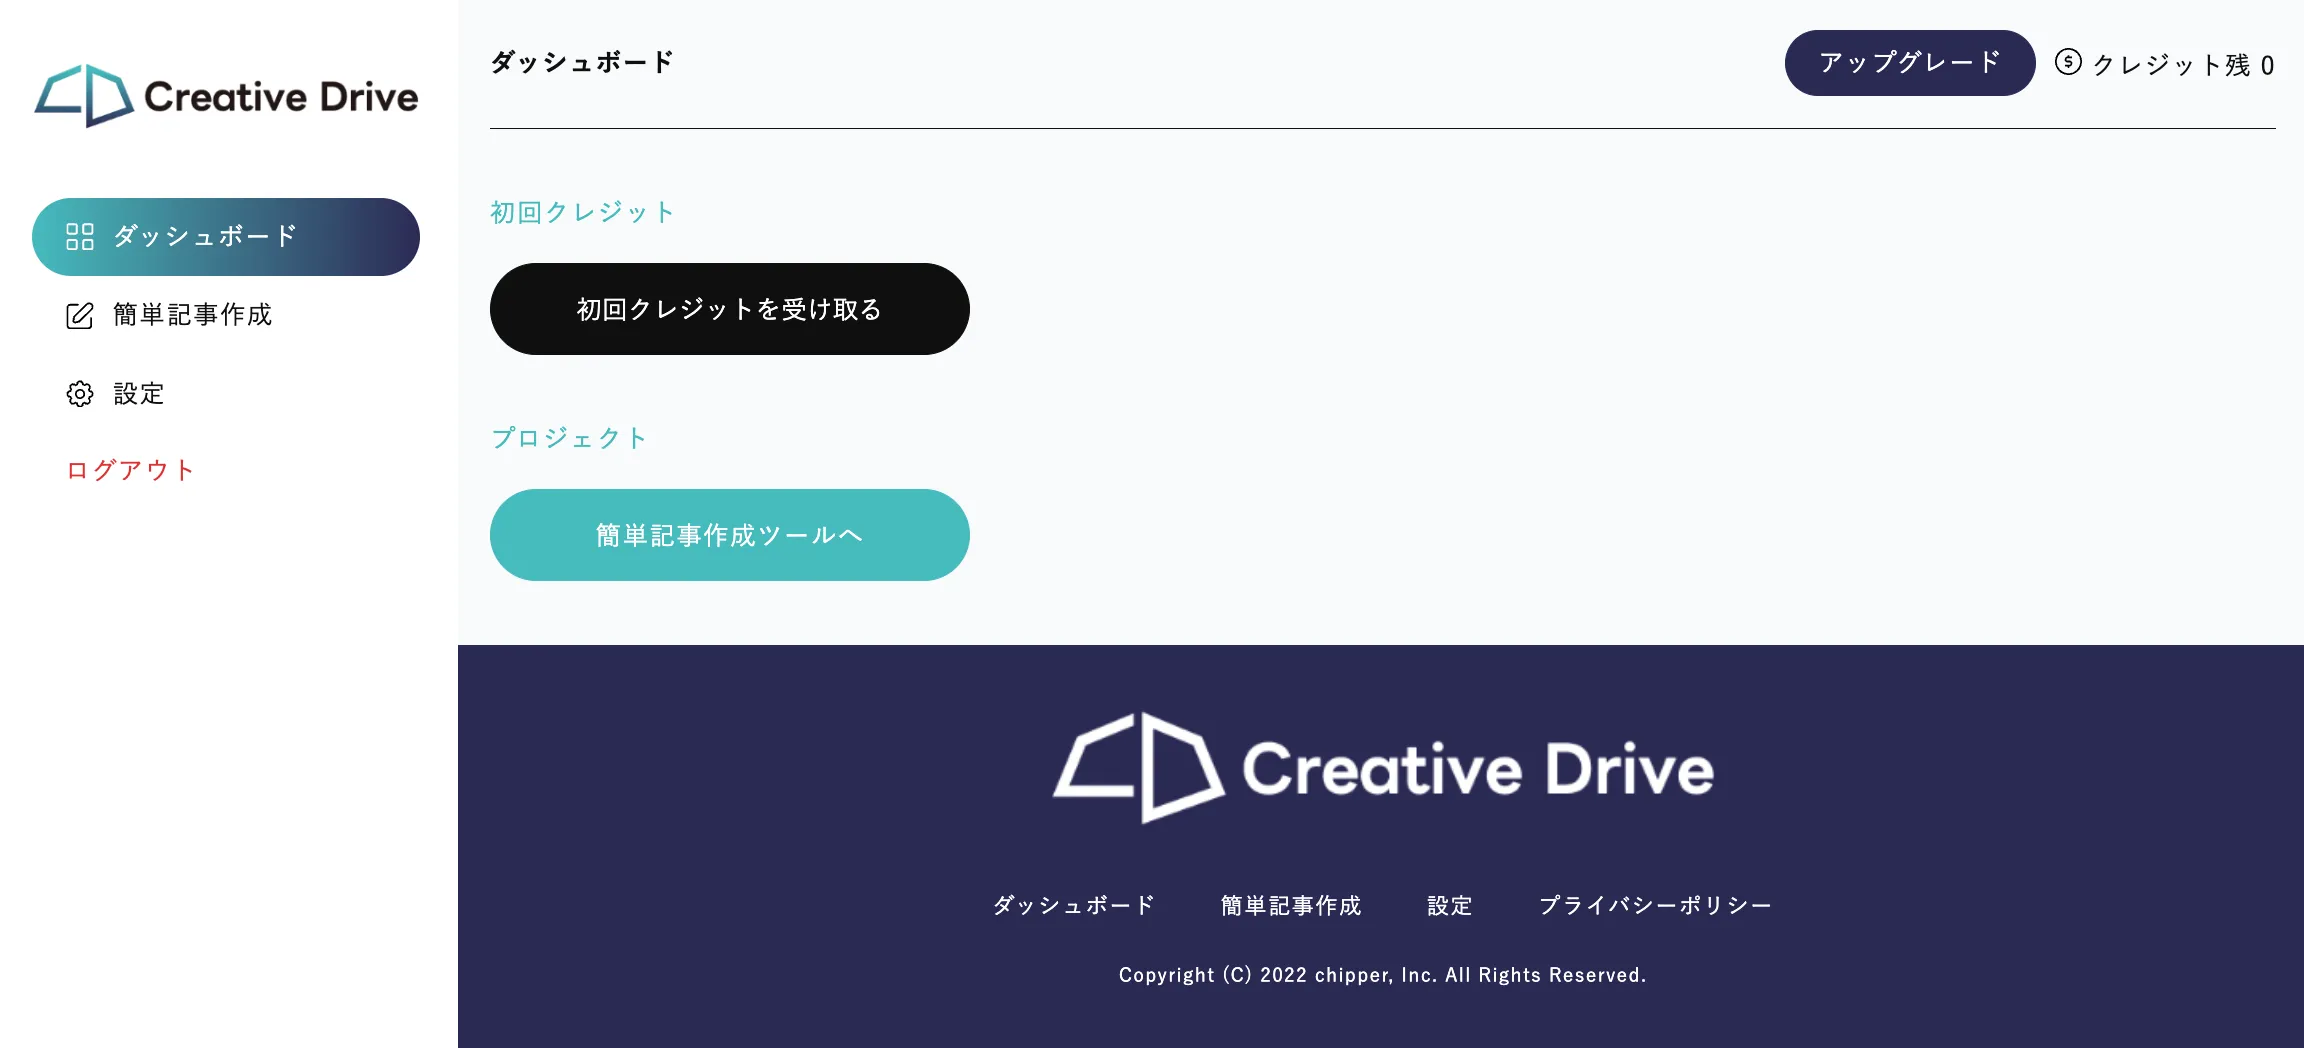 Creative Drive ダッシュボード